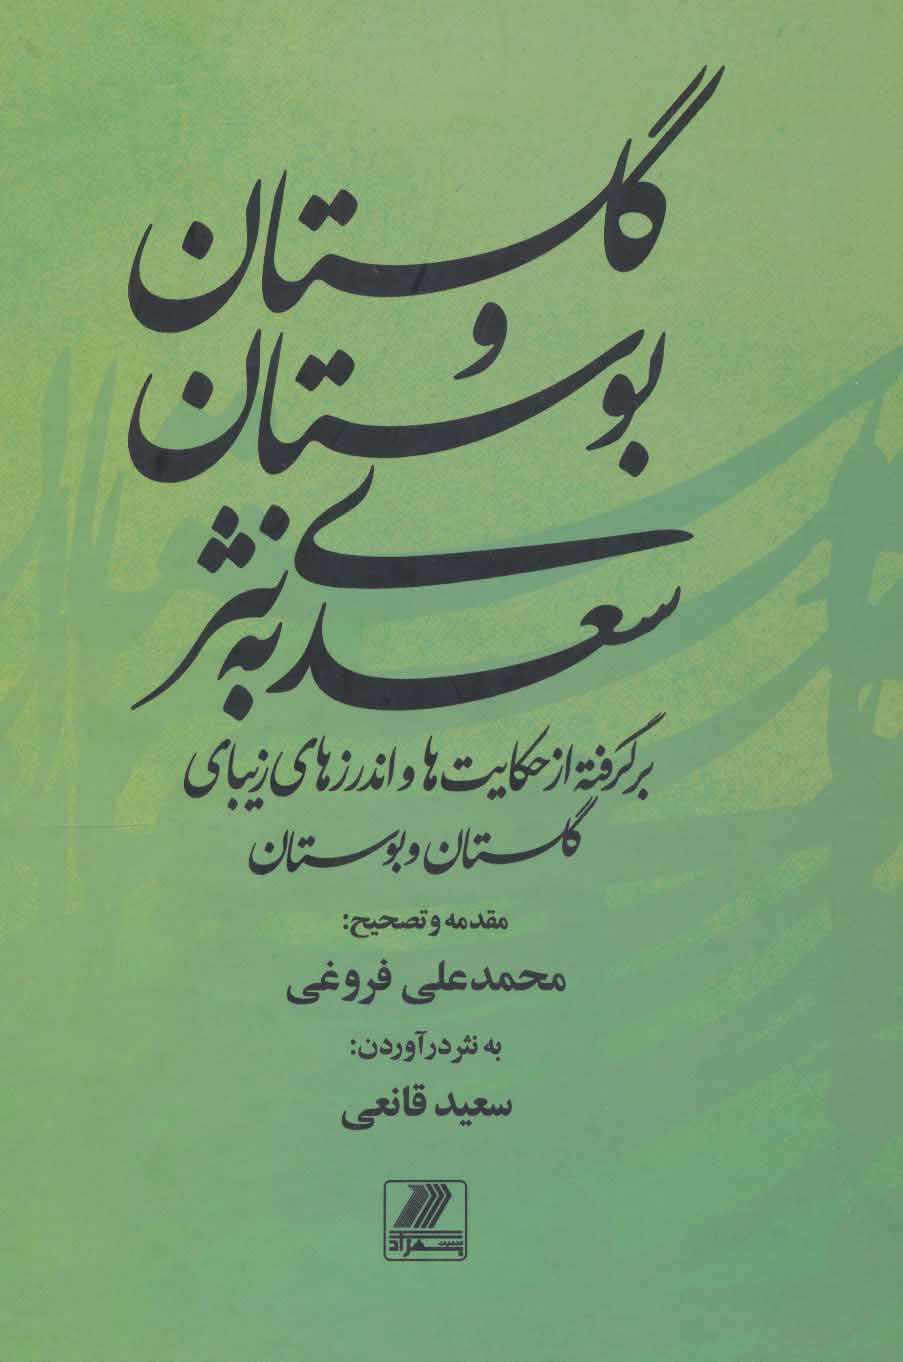 کتاب گلستان و بوستان سعدی به نثر برگرفته از حکایت ها و اندرزهای زیبای گلستان و بوستان